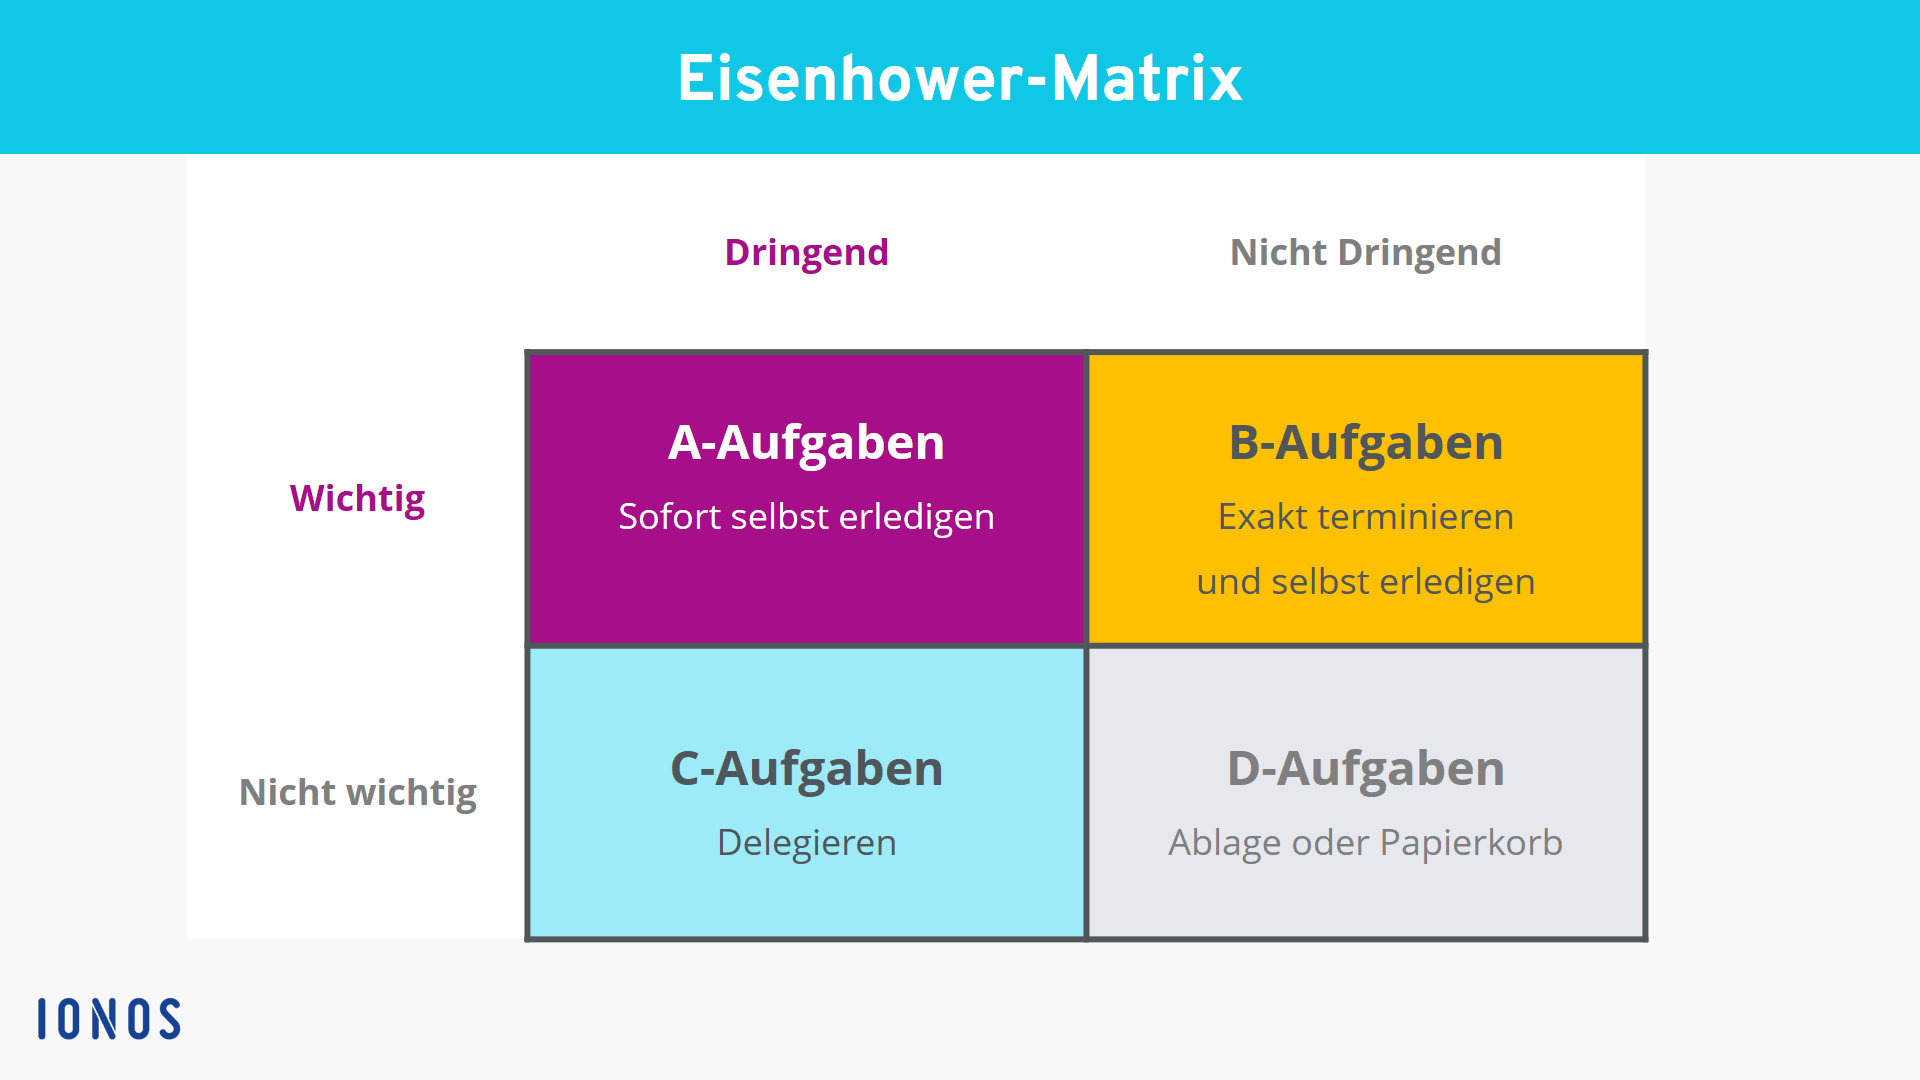 Darstellung der Eisenhower-Matrix